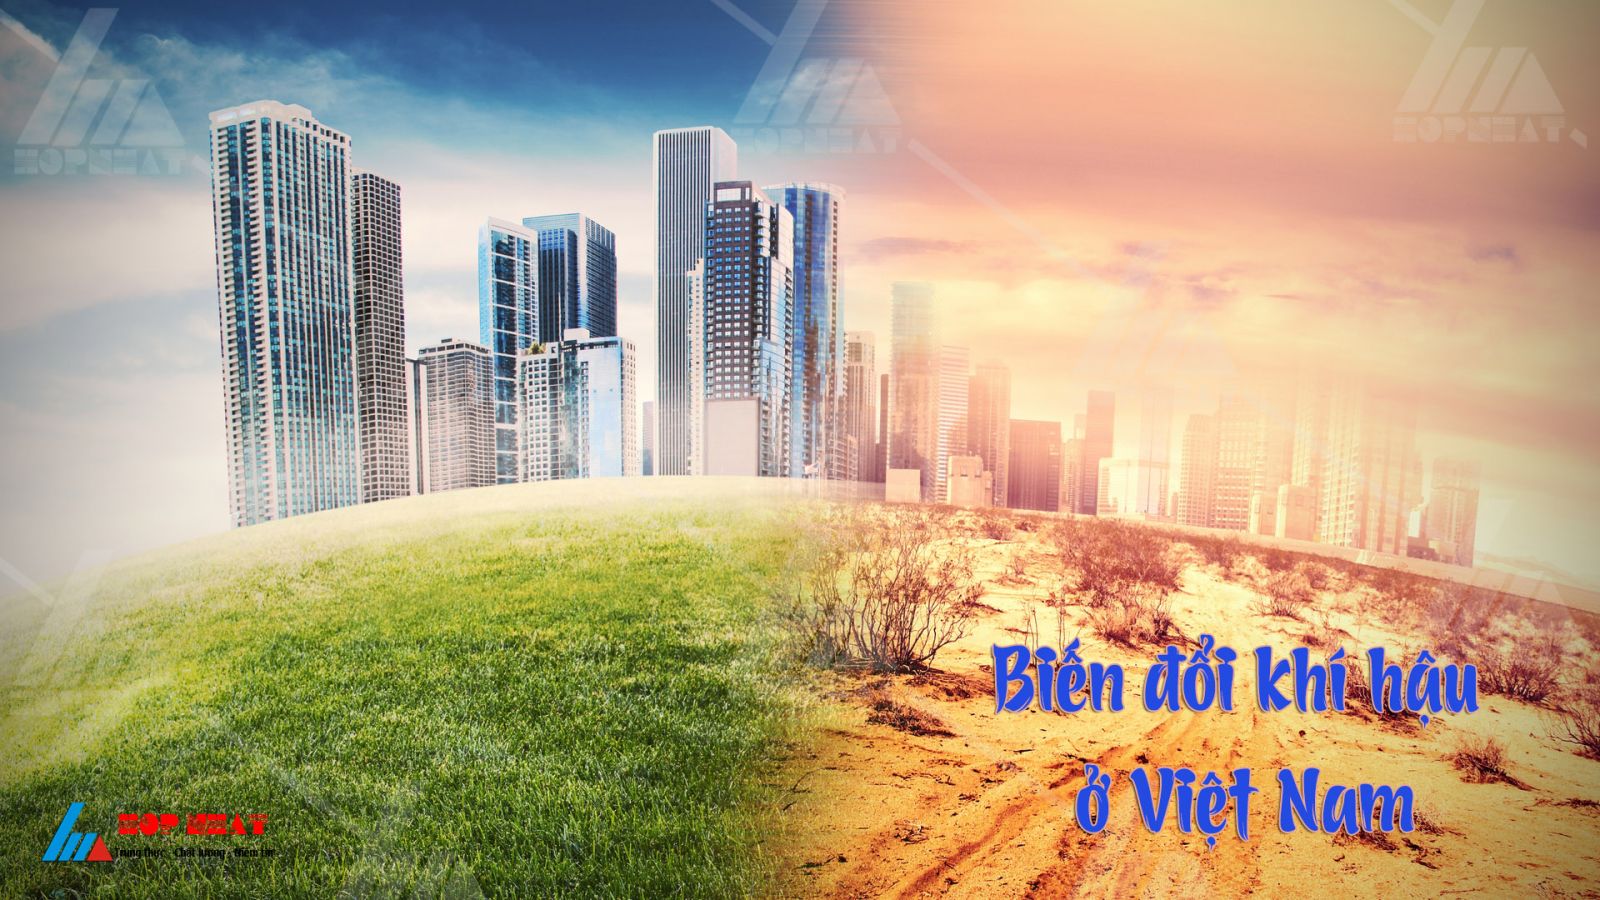 Biến đổi khí hậu ở Việt Nam